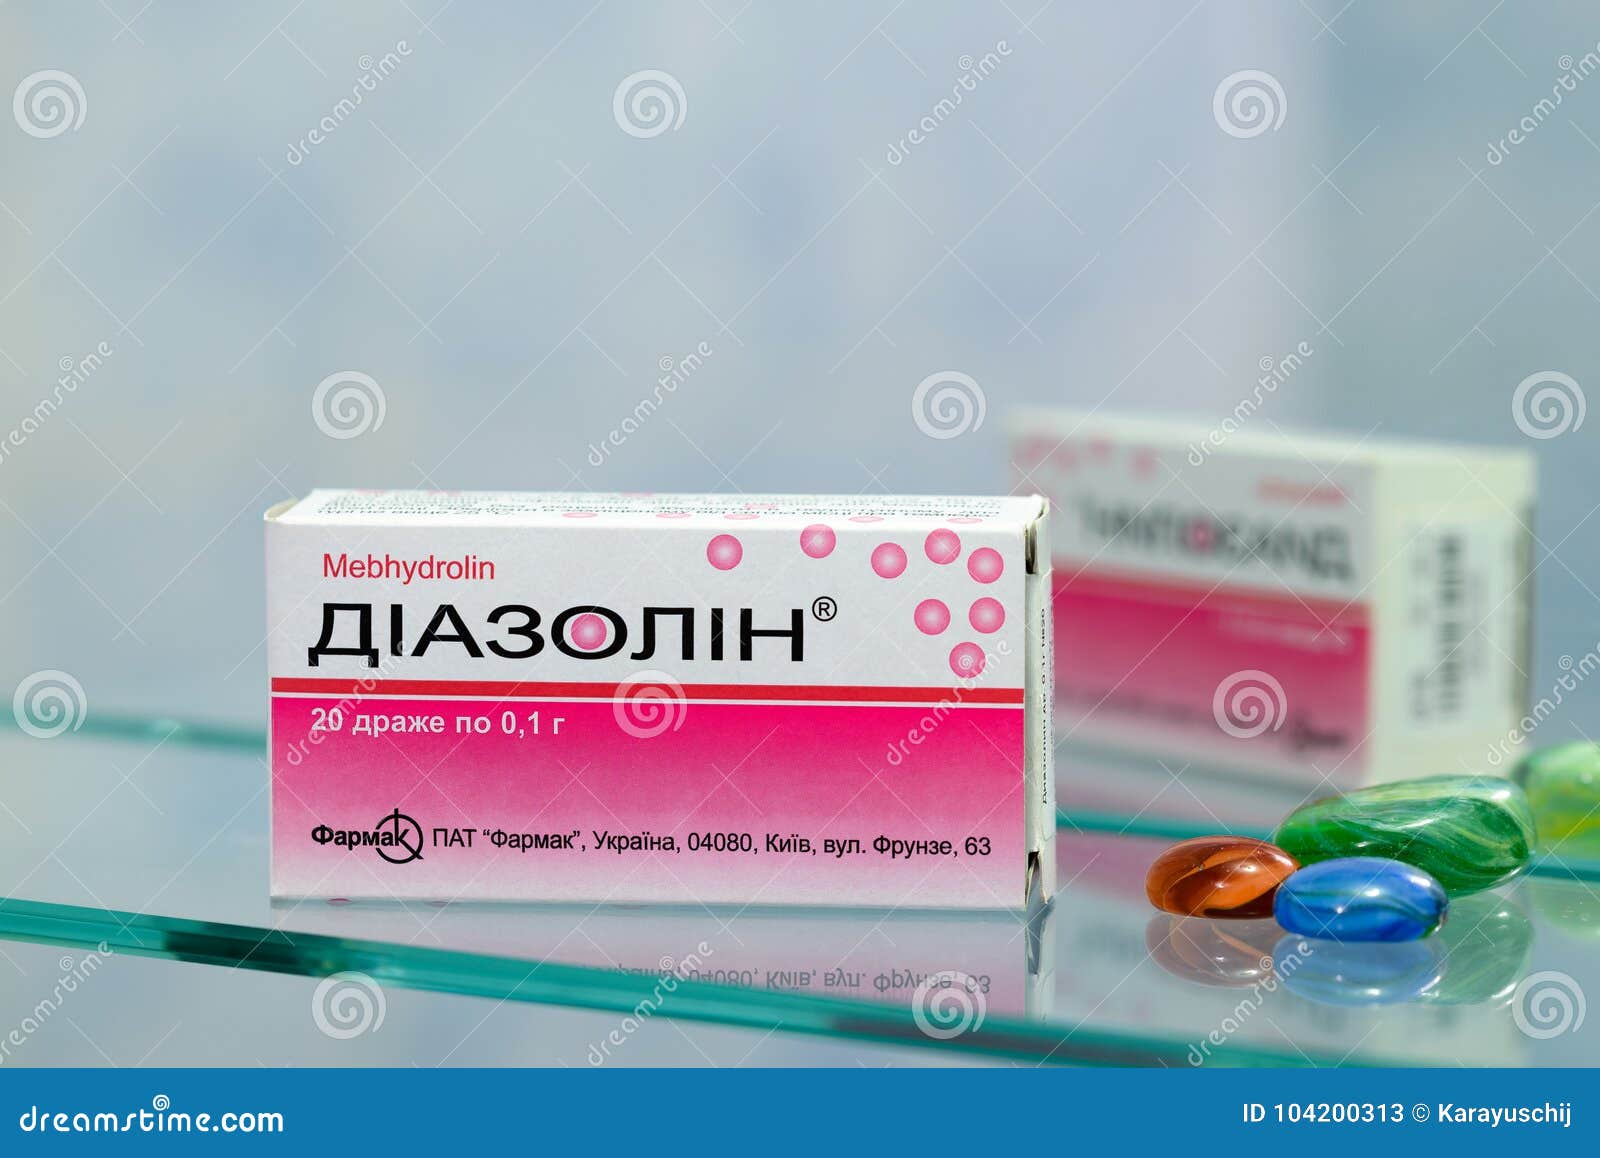 what is the antihistamine drug